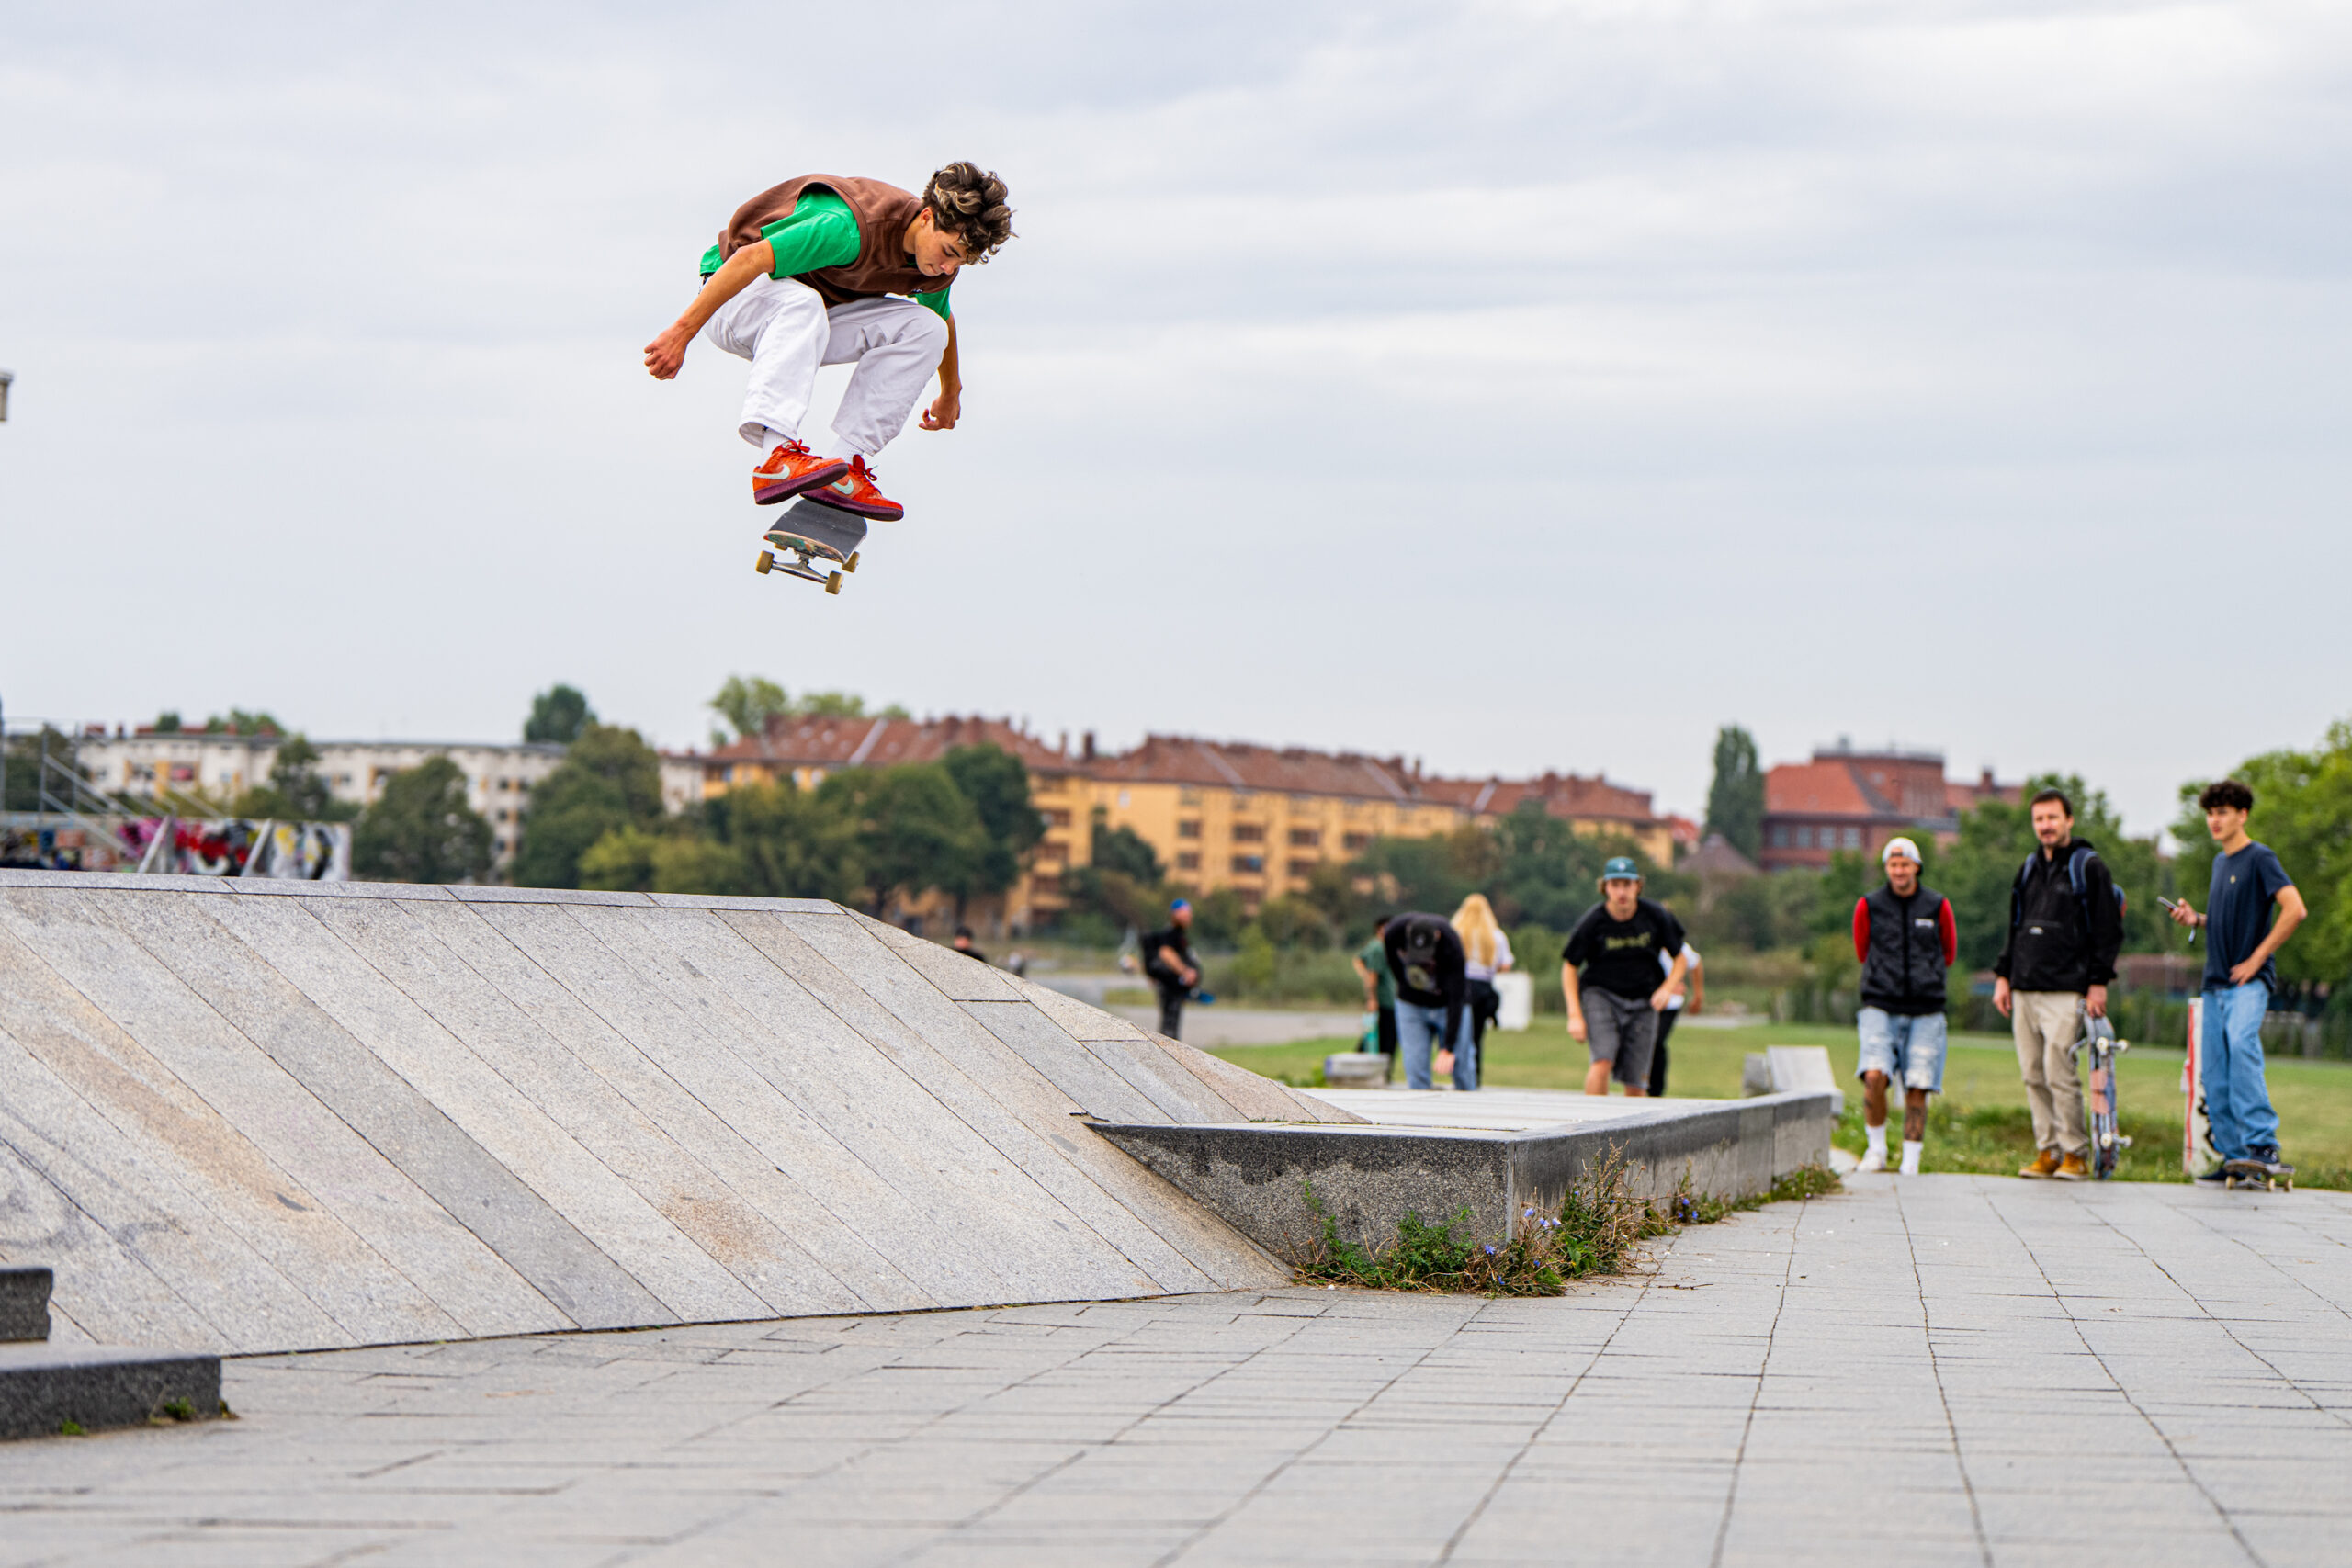 Diego Broest - Kickflip at Tempelhof Skatepark Berlin